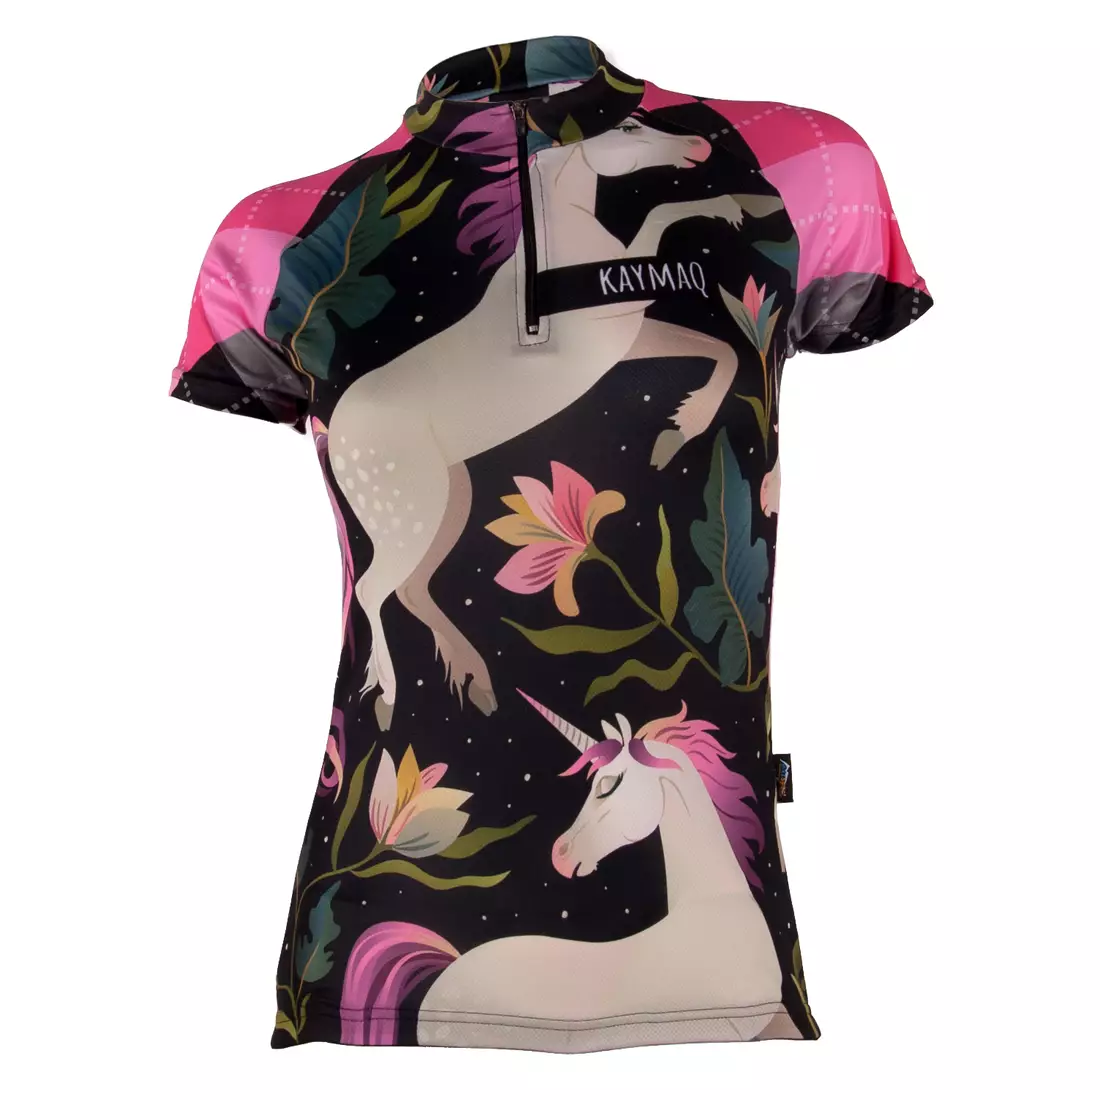 KAYMAQ UNC women's cycling jersey